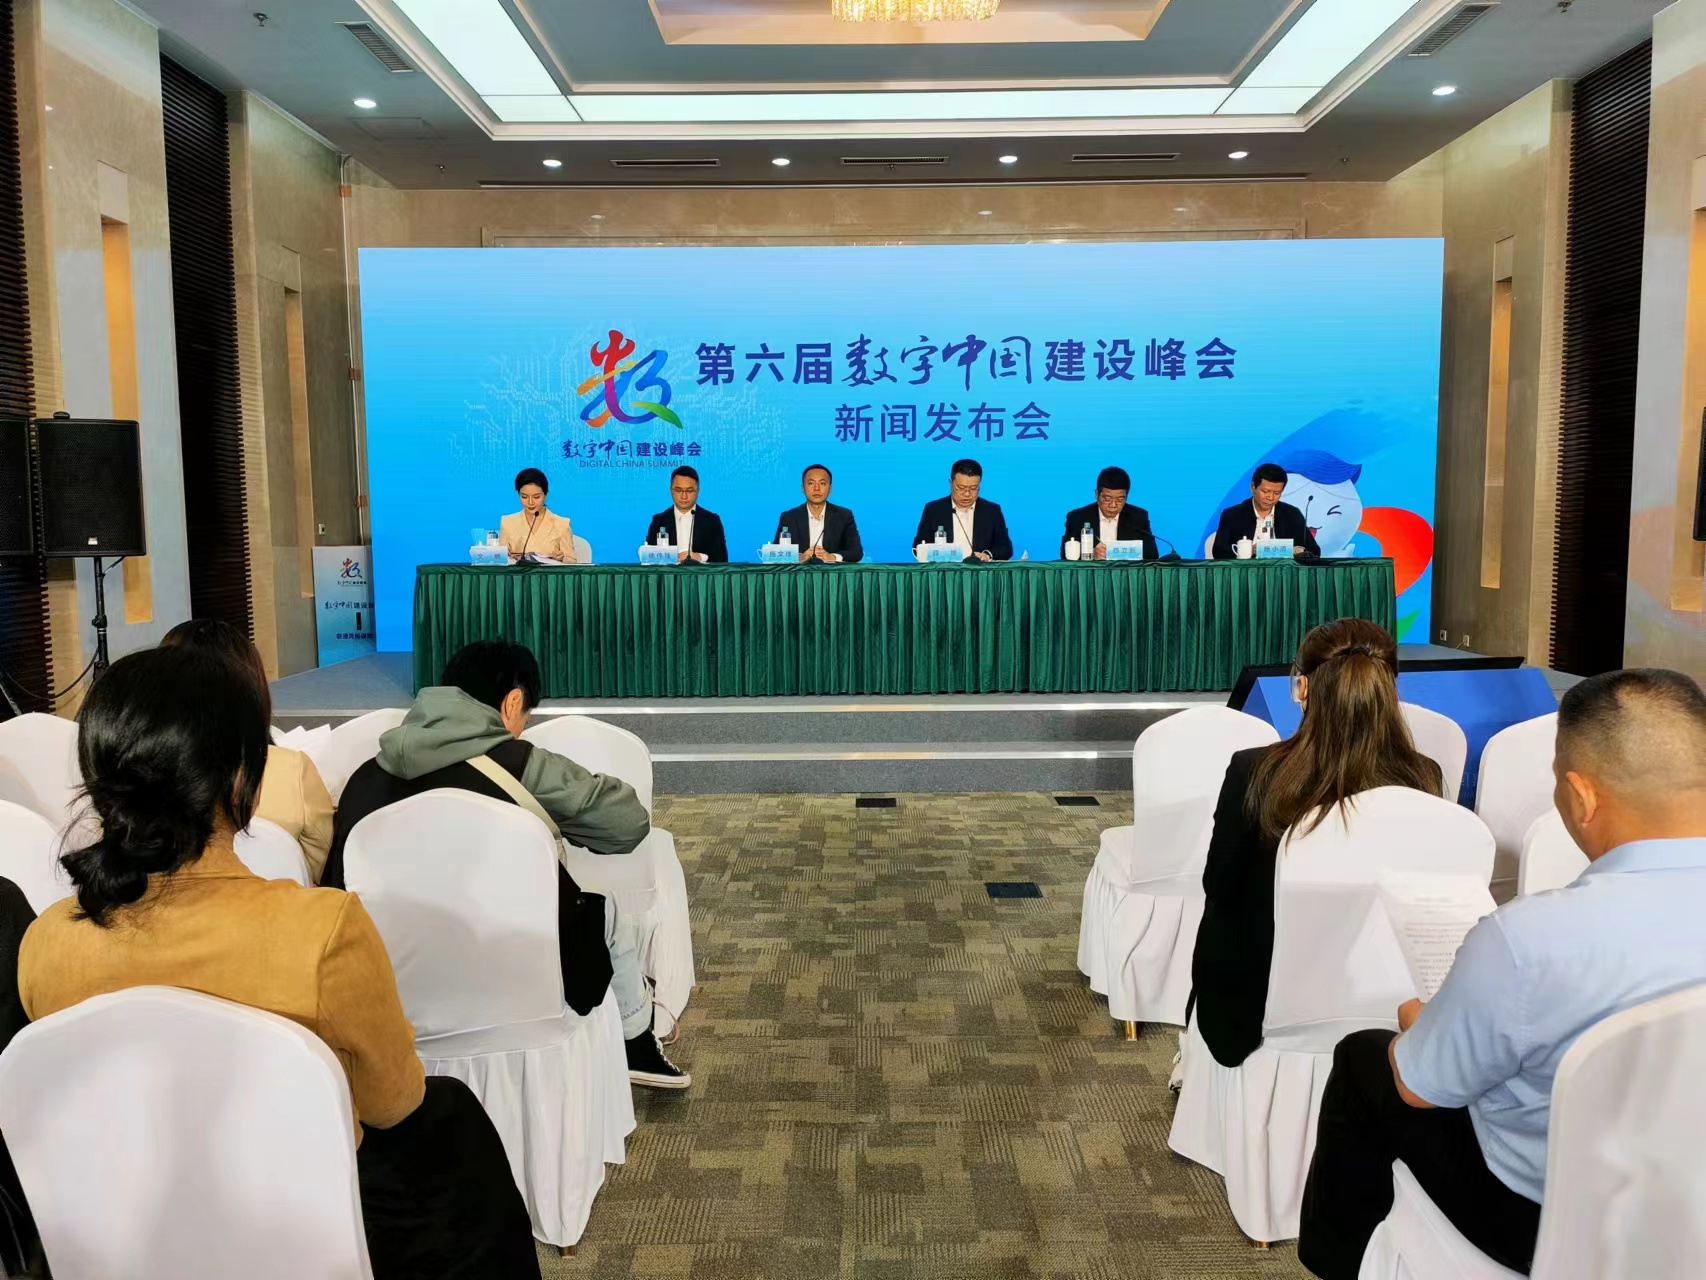 第六屆數字中國建設峰會福州市特色活動新聞發佈會召開